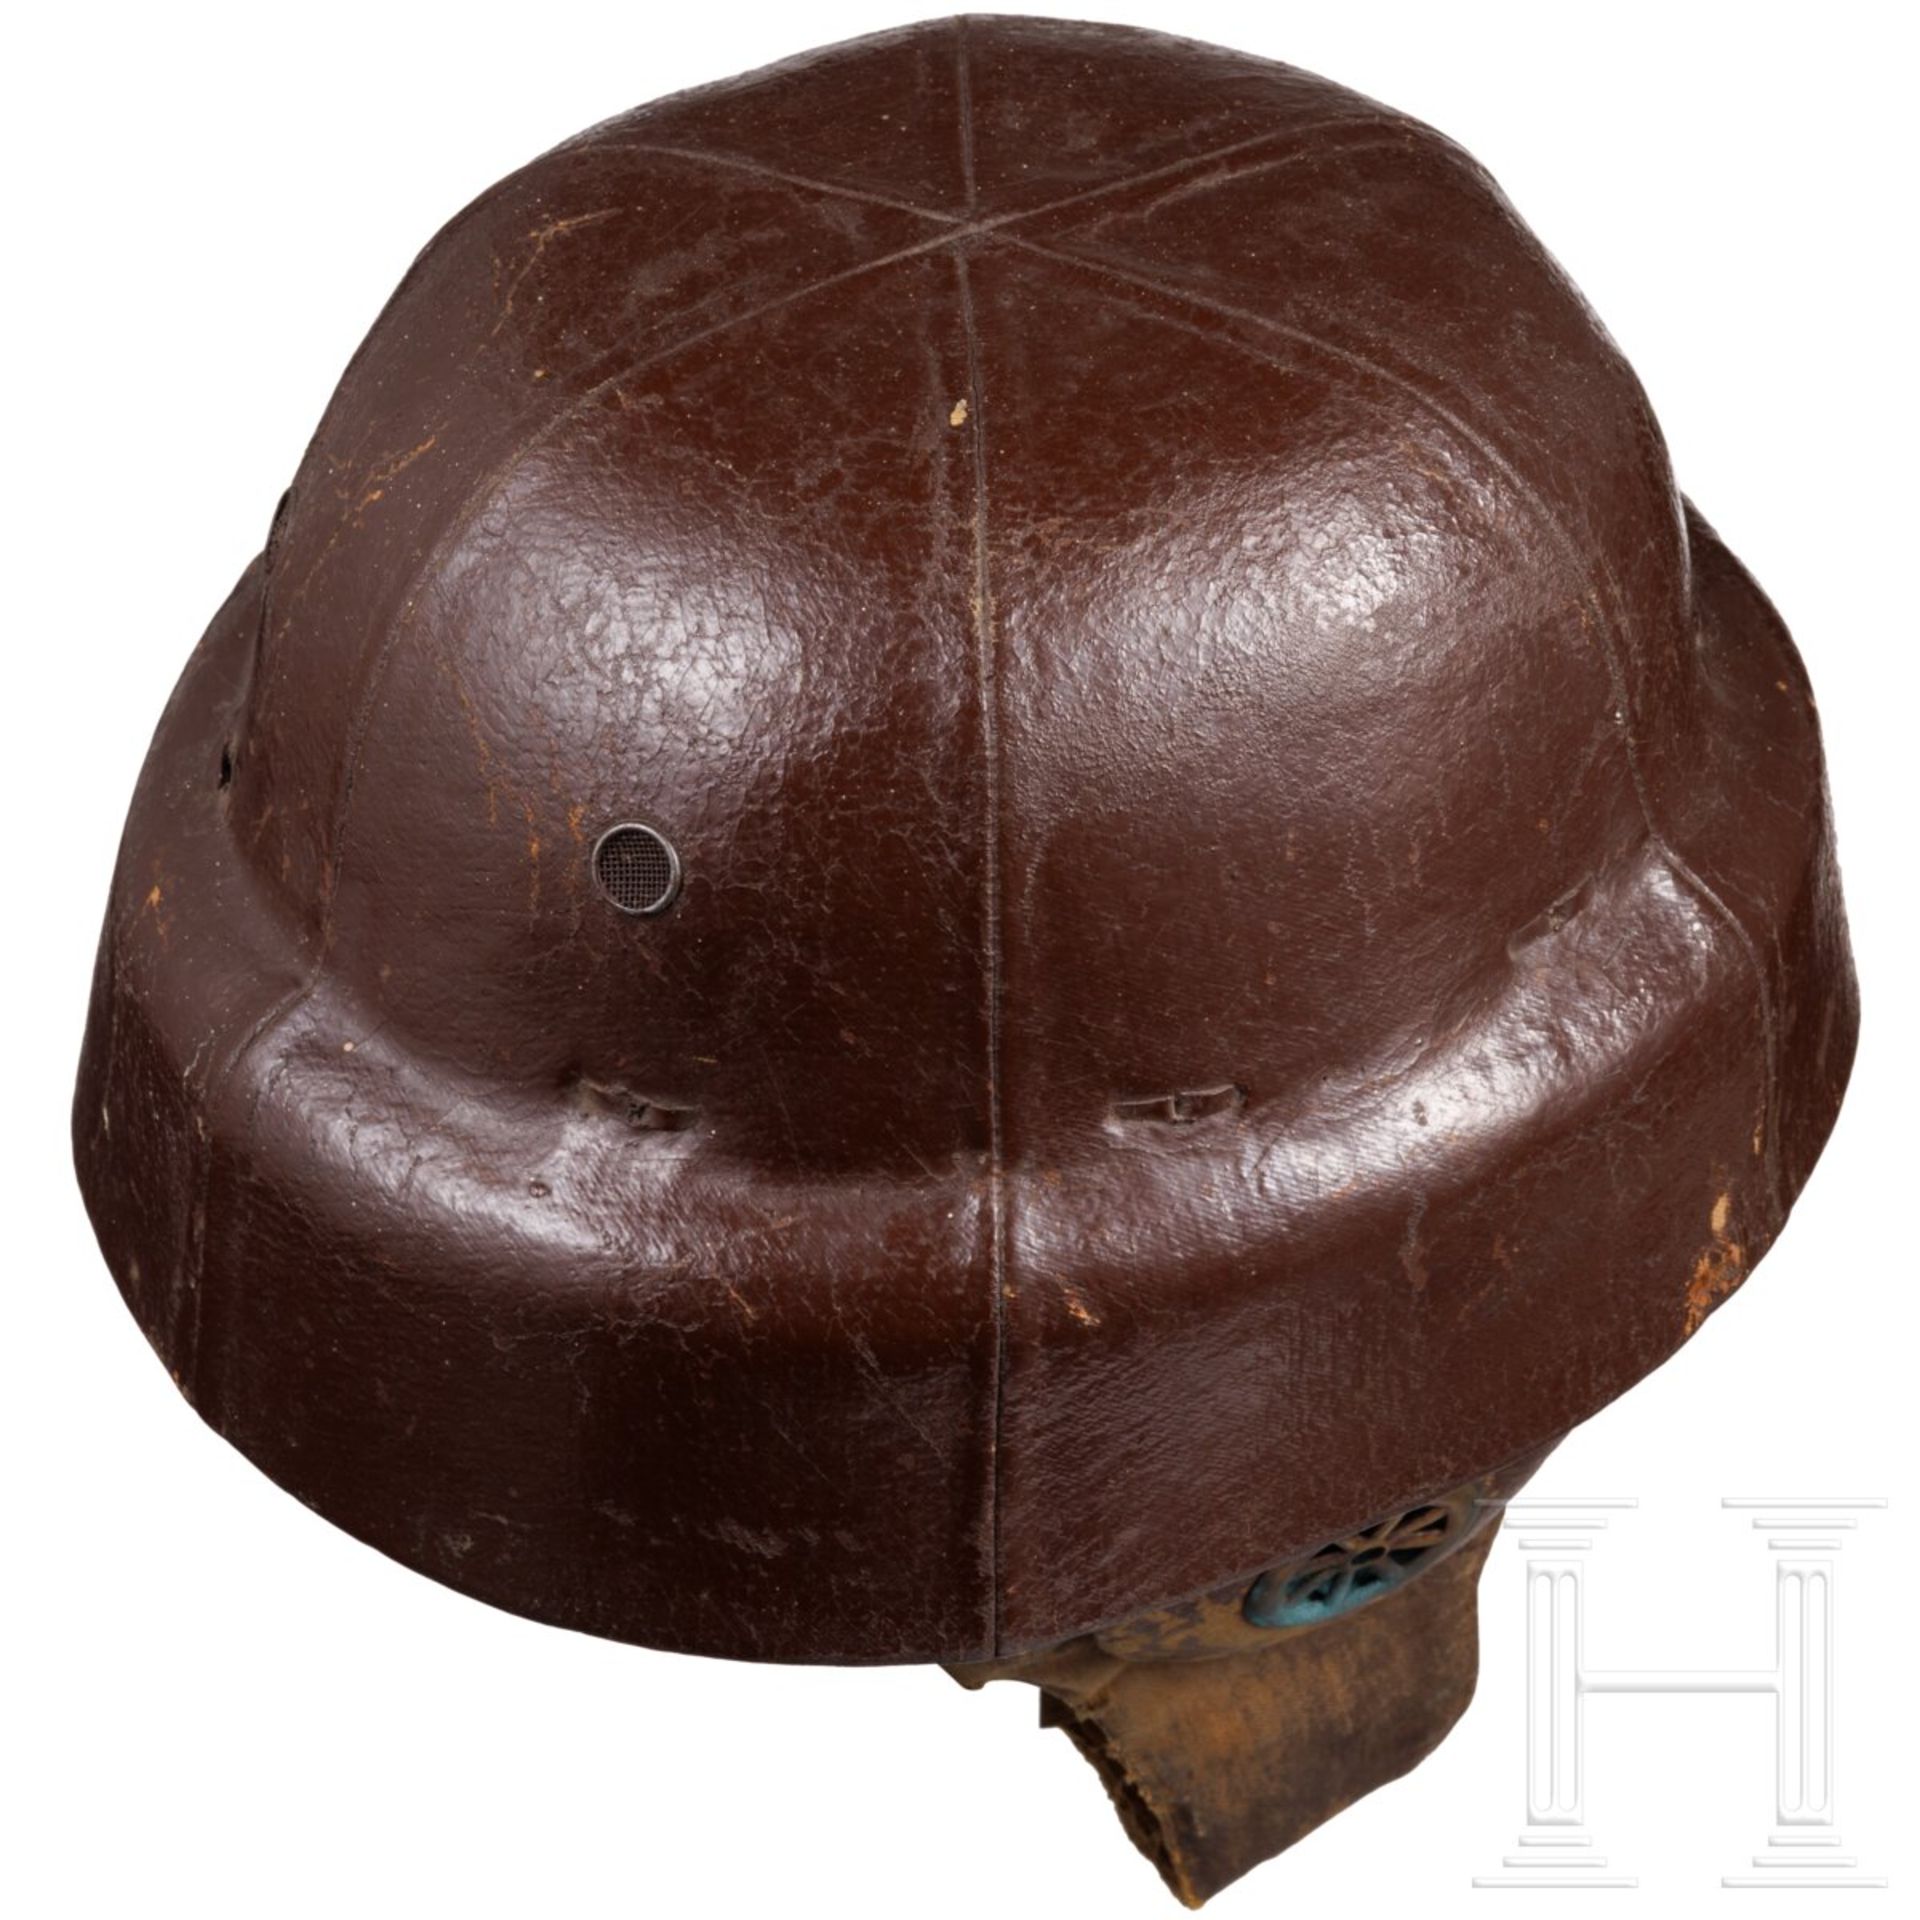 Helm vom Typ "Roold" für alliierte Flieger im 1. Weltkrieg - Image 4 of 6